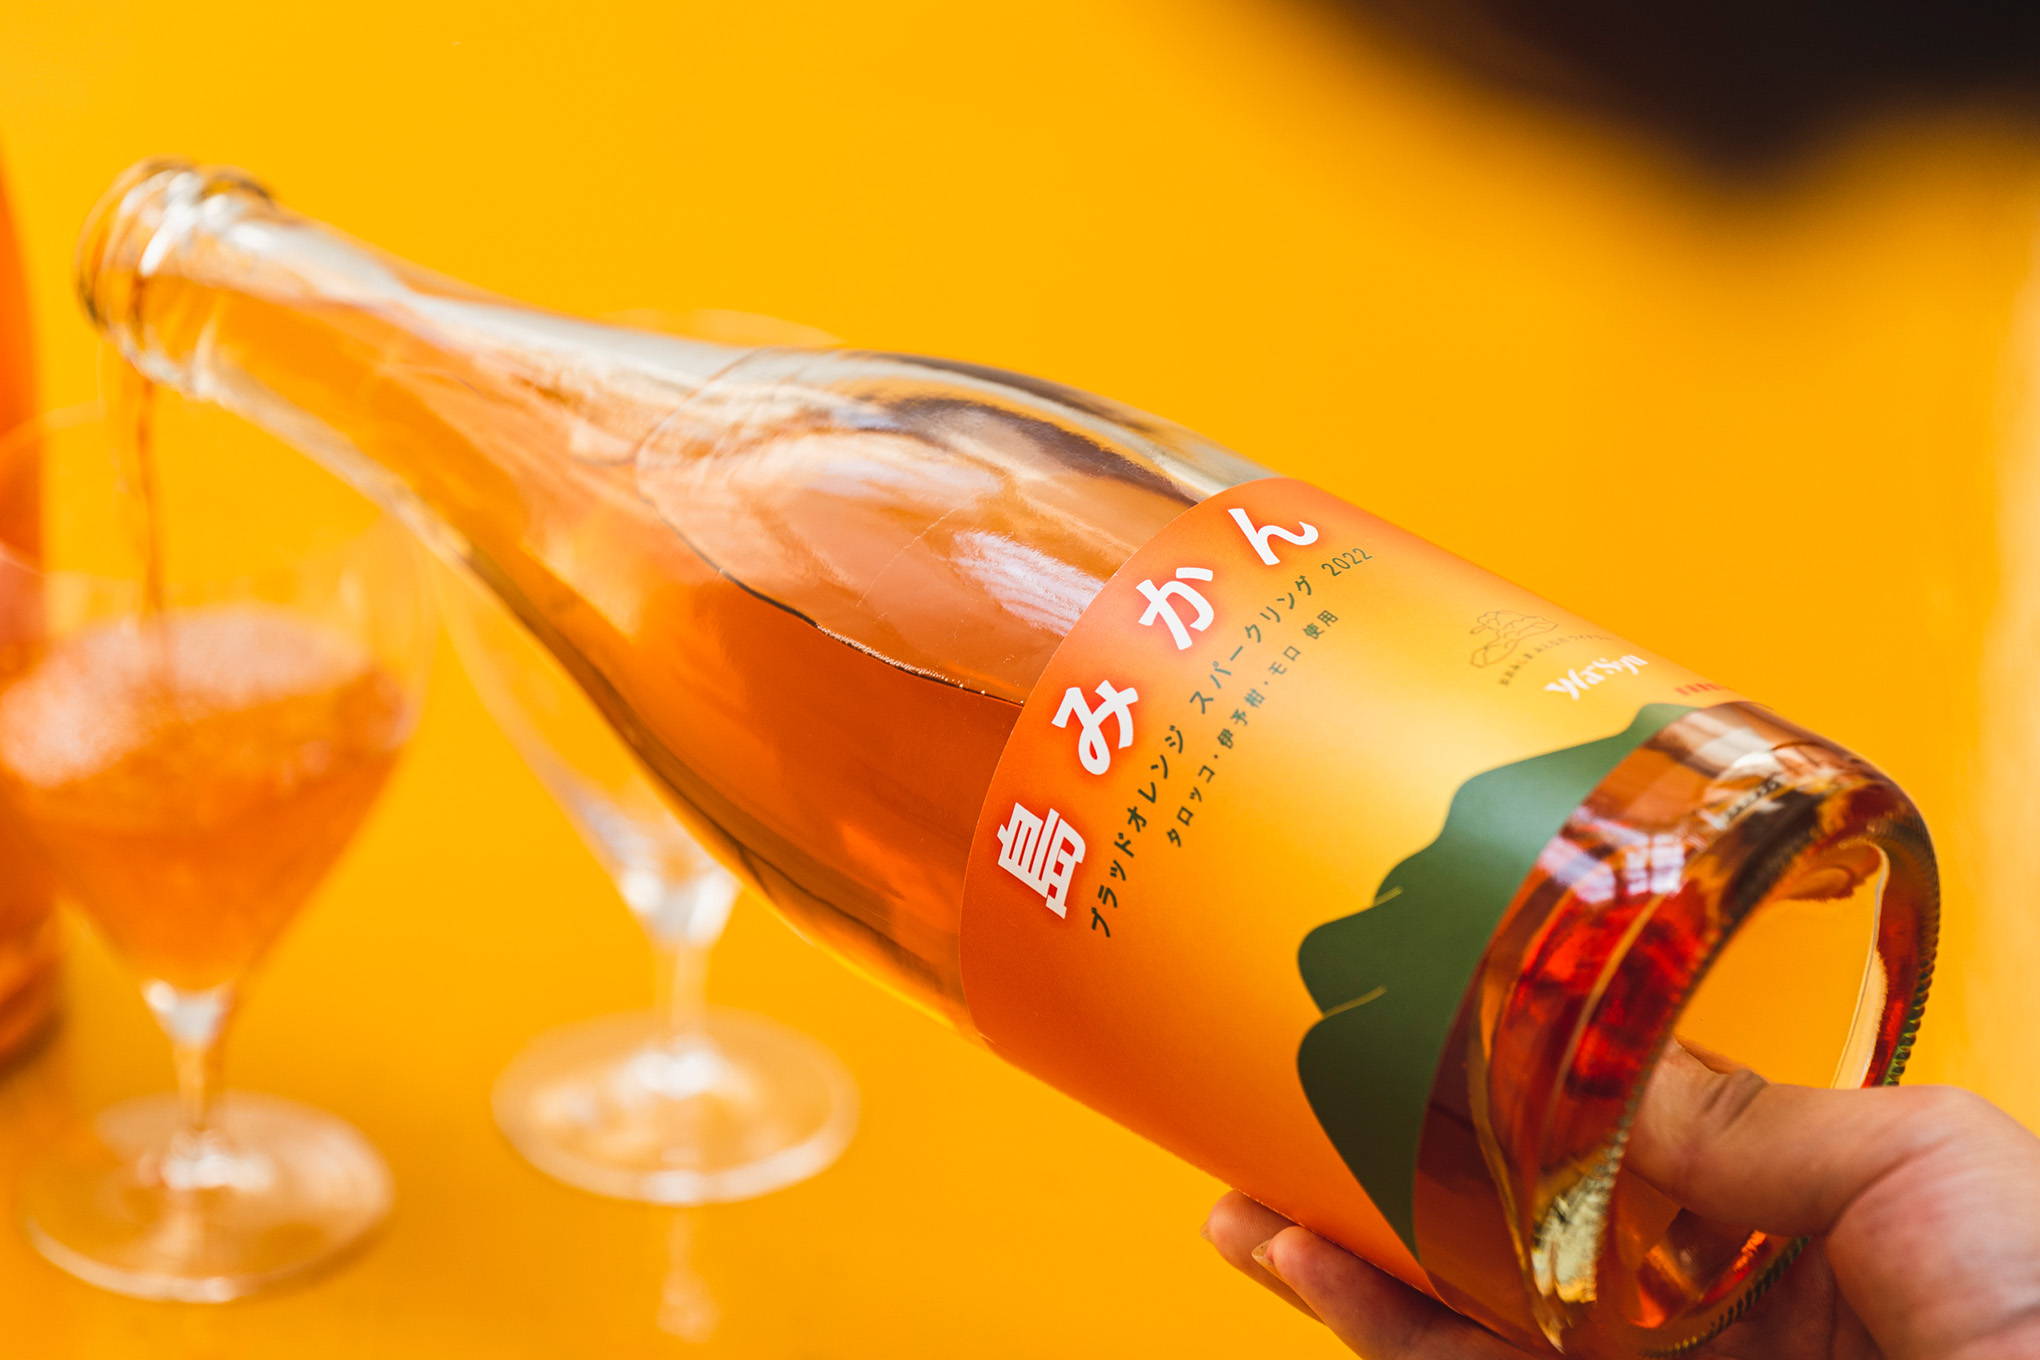 『大三島みんなのワイナリー』の醸造家・川田佑輔さんに、特別インタビュー。今回のコラボレーションは、珍しいブラッドオレンジのお酒！